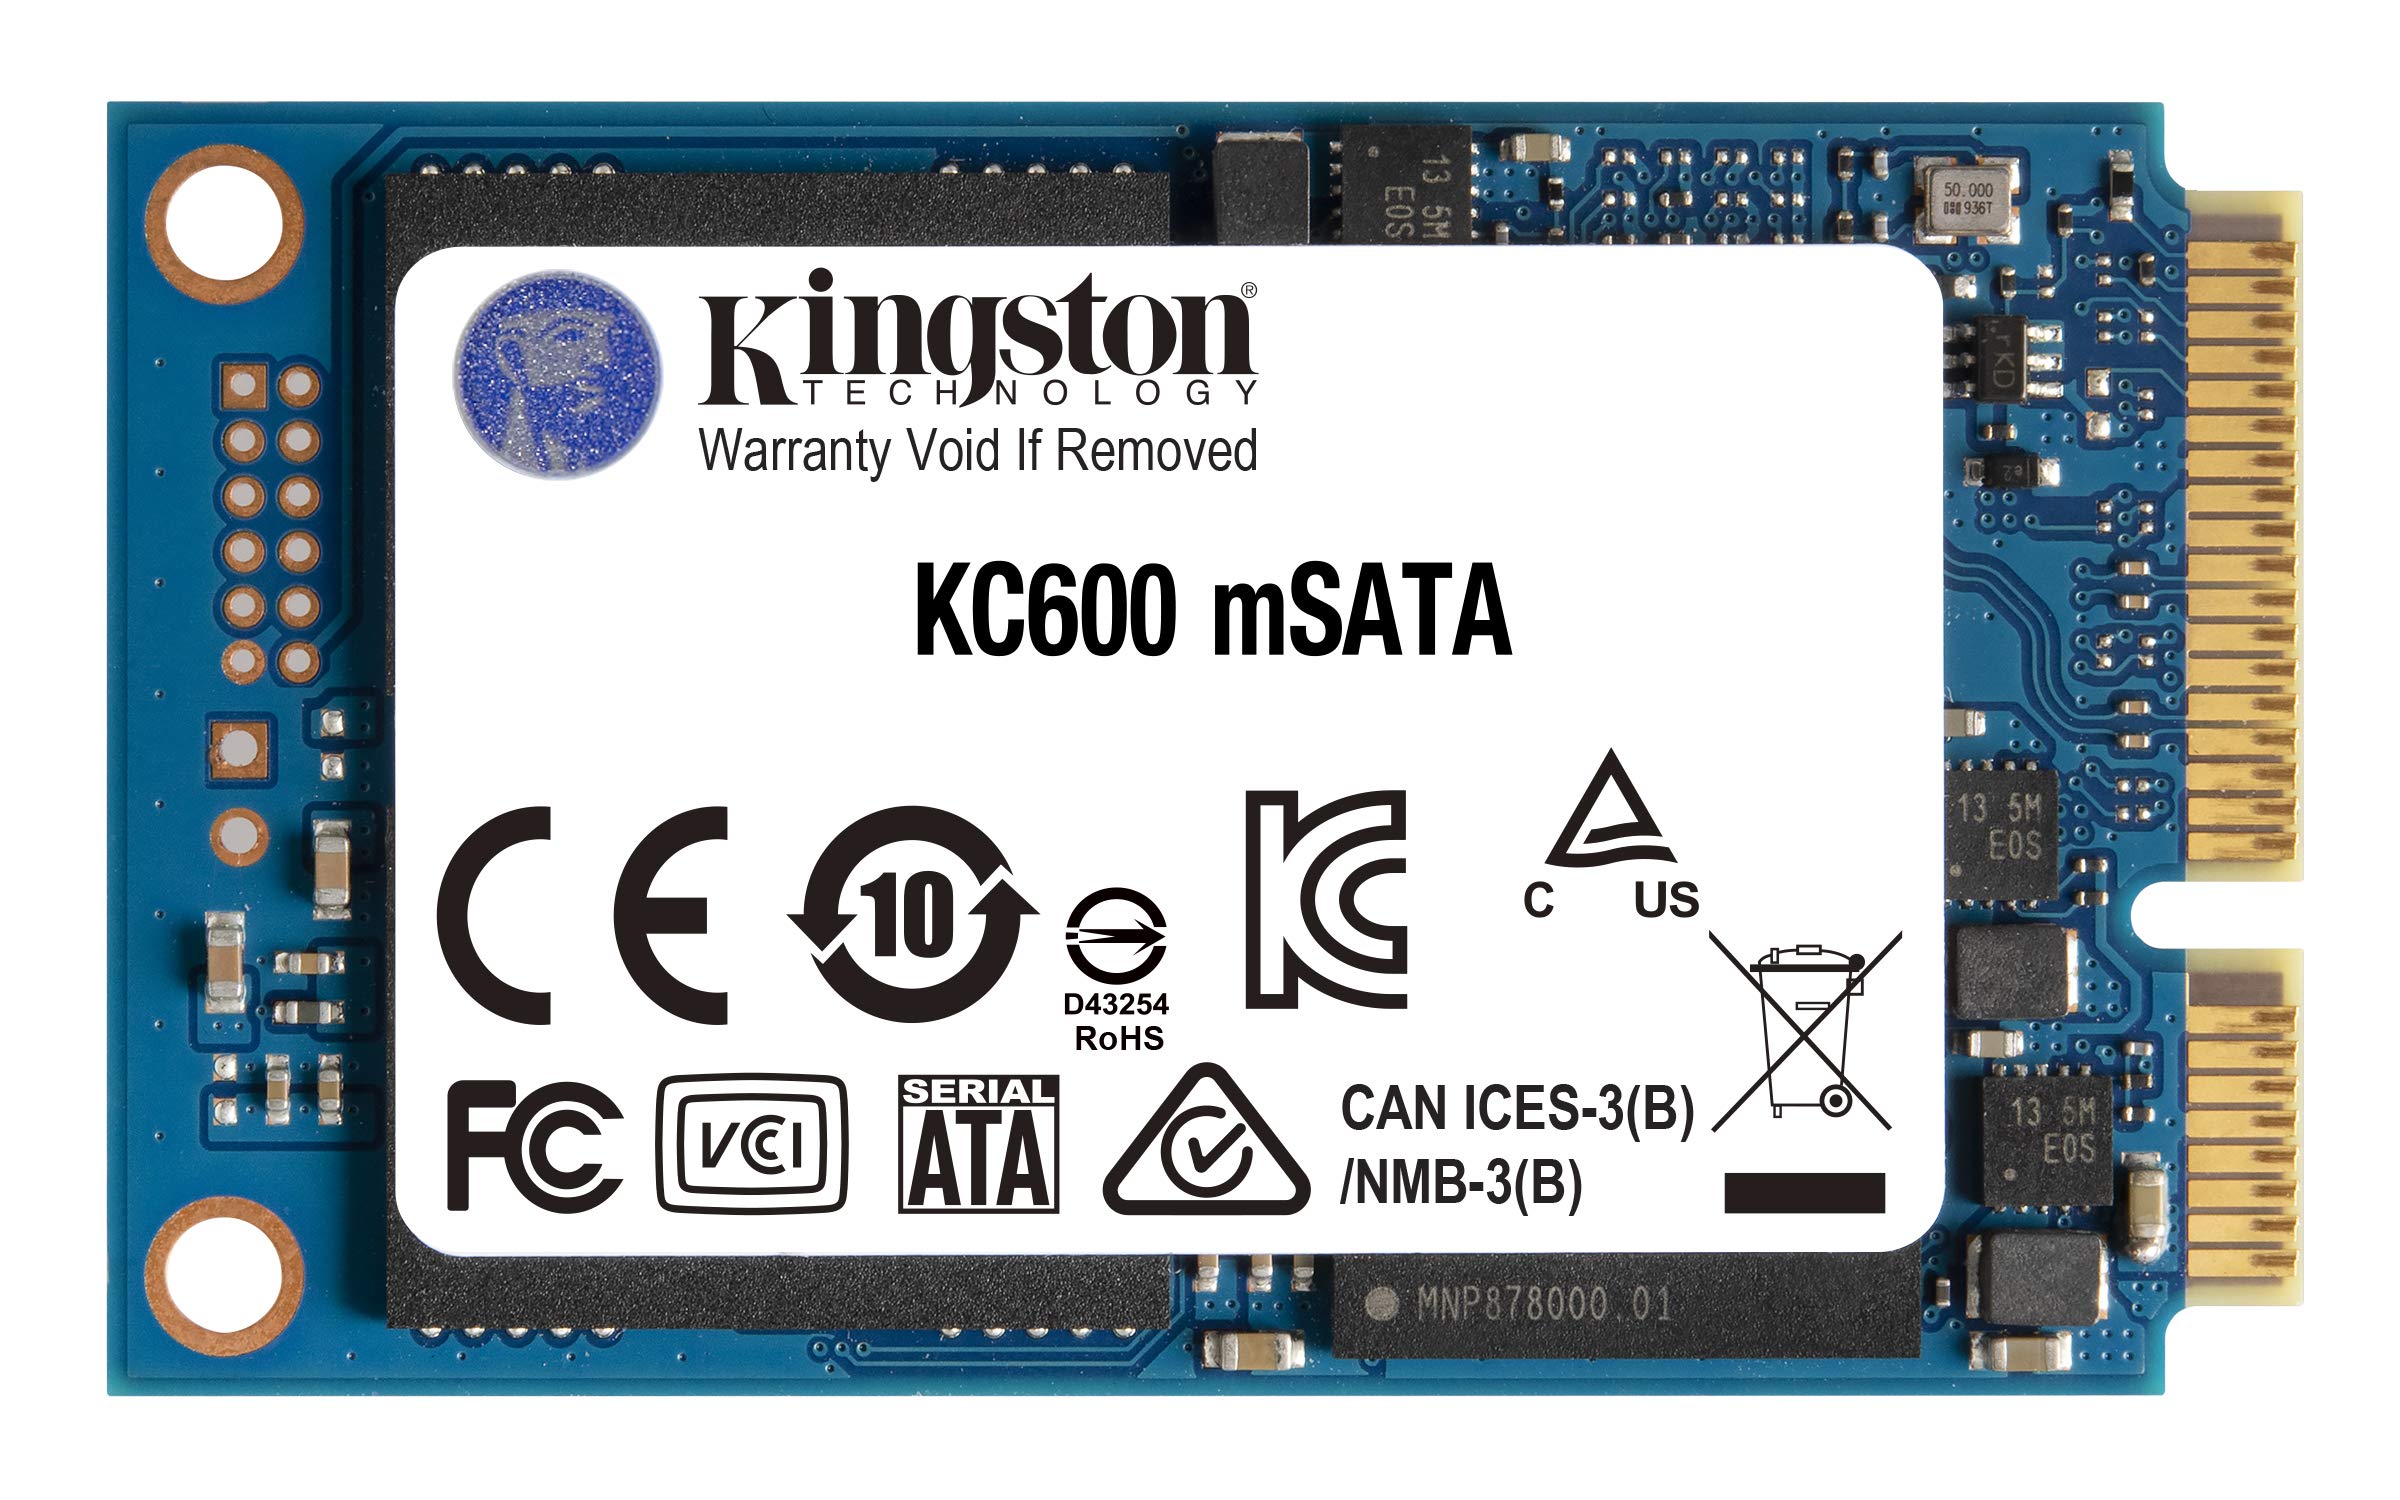 キングストンテクノロジー Kingston SSD KC600 256GB mSATA 3D TLC NAND採用 SKC600MS256G 削除削除品 5年削